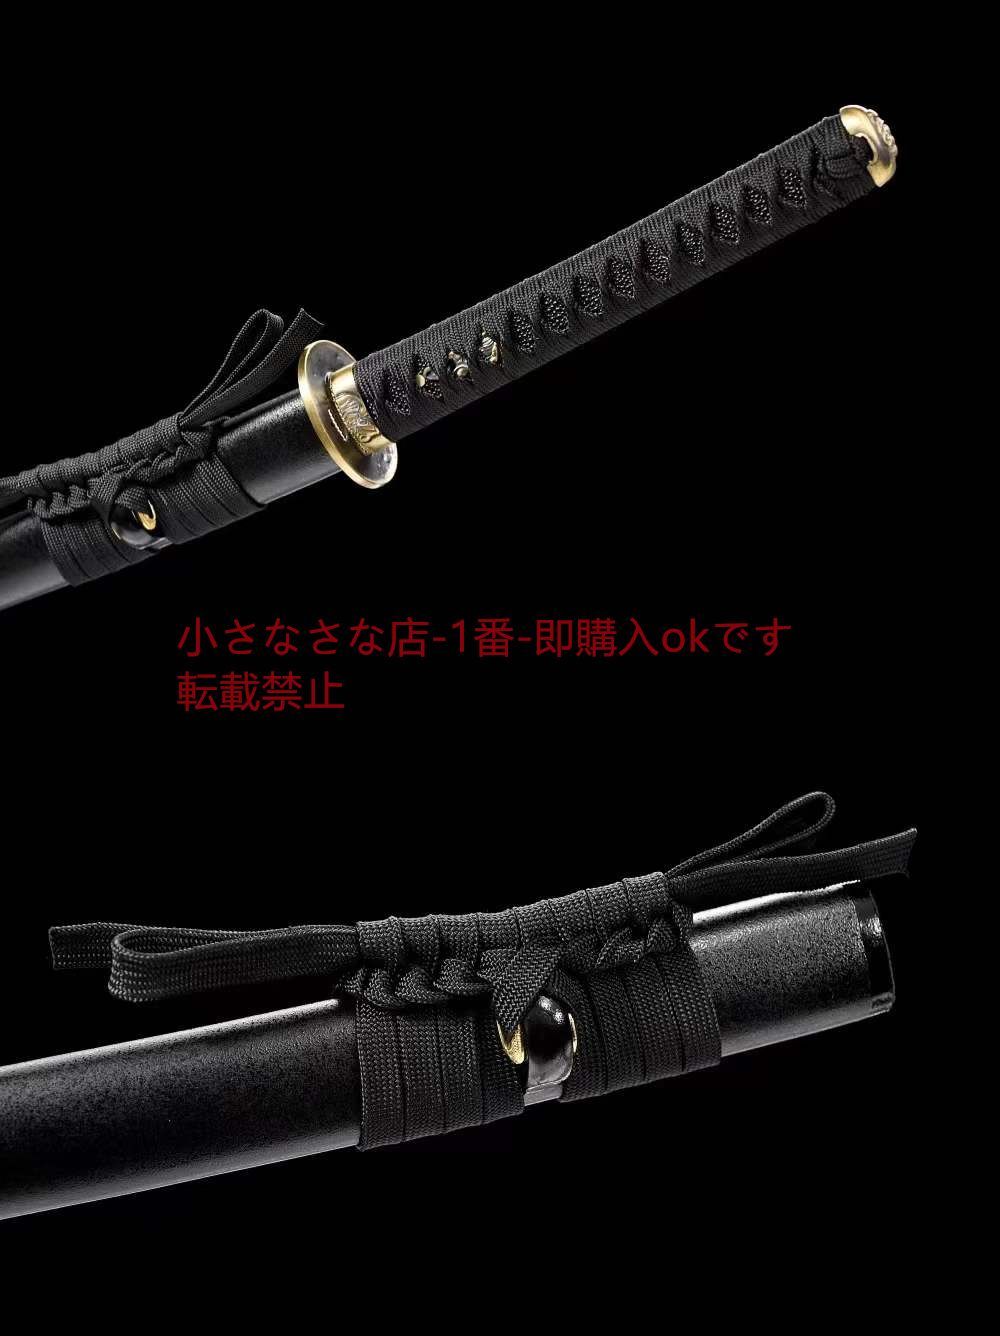 銅装高性能侍刀『海妖』 武具 刀装具 日本刀 模造刀 居合刀 - メルカリ